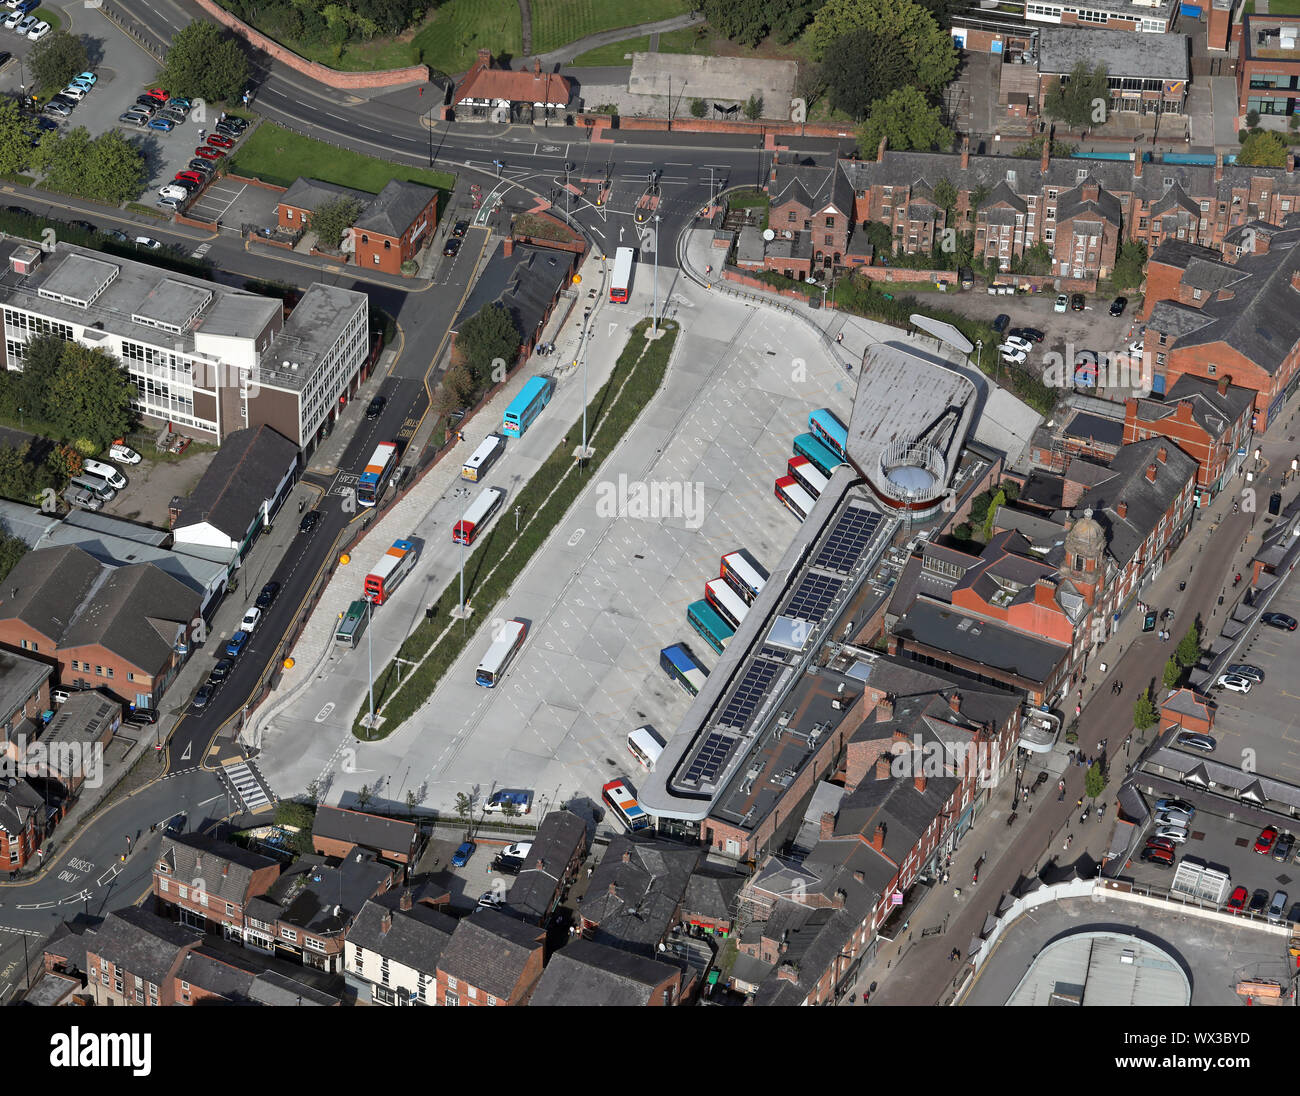 Vue aérienne de la gare routière de Wigan dans le centre-ville, Lancashire, UK Banque D'Images